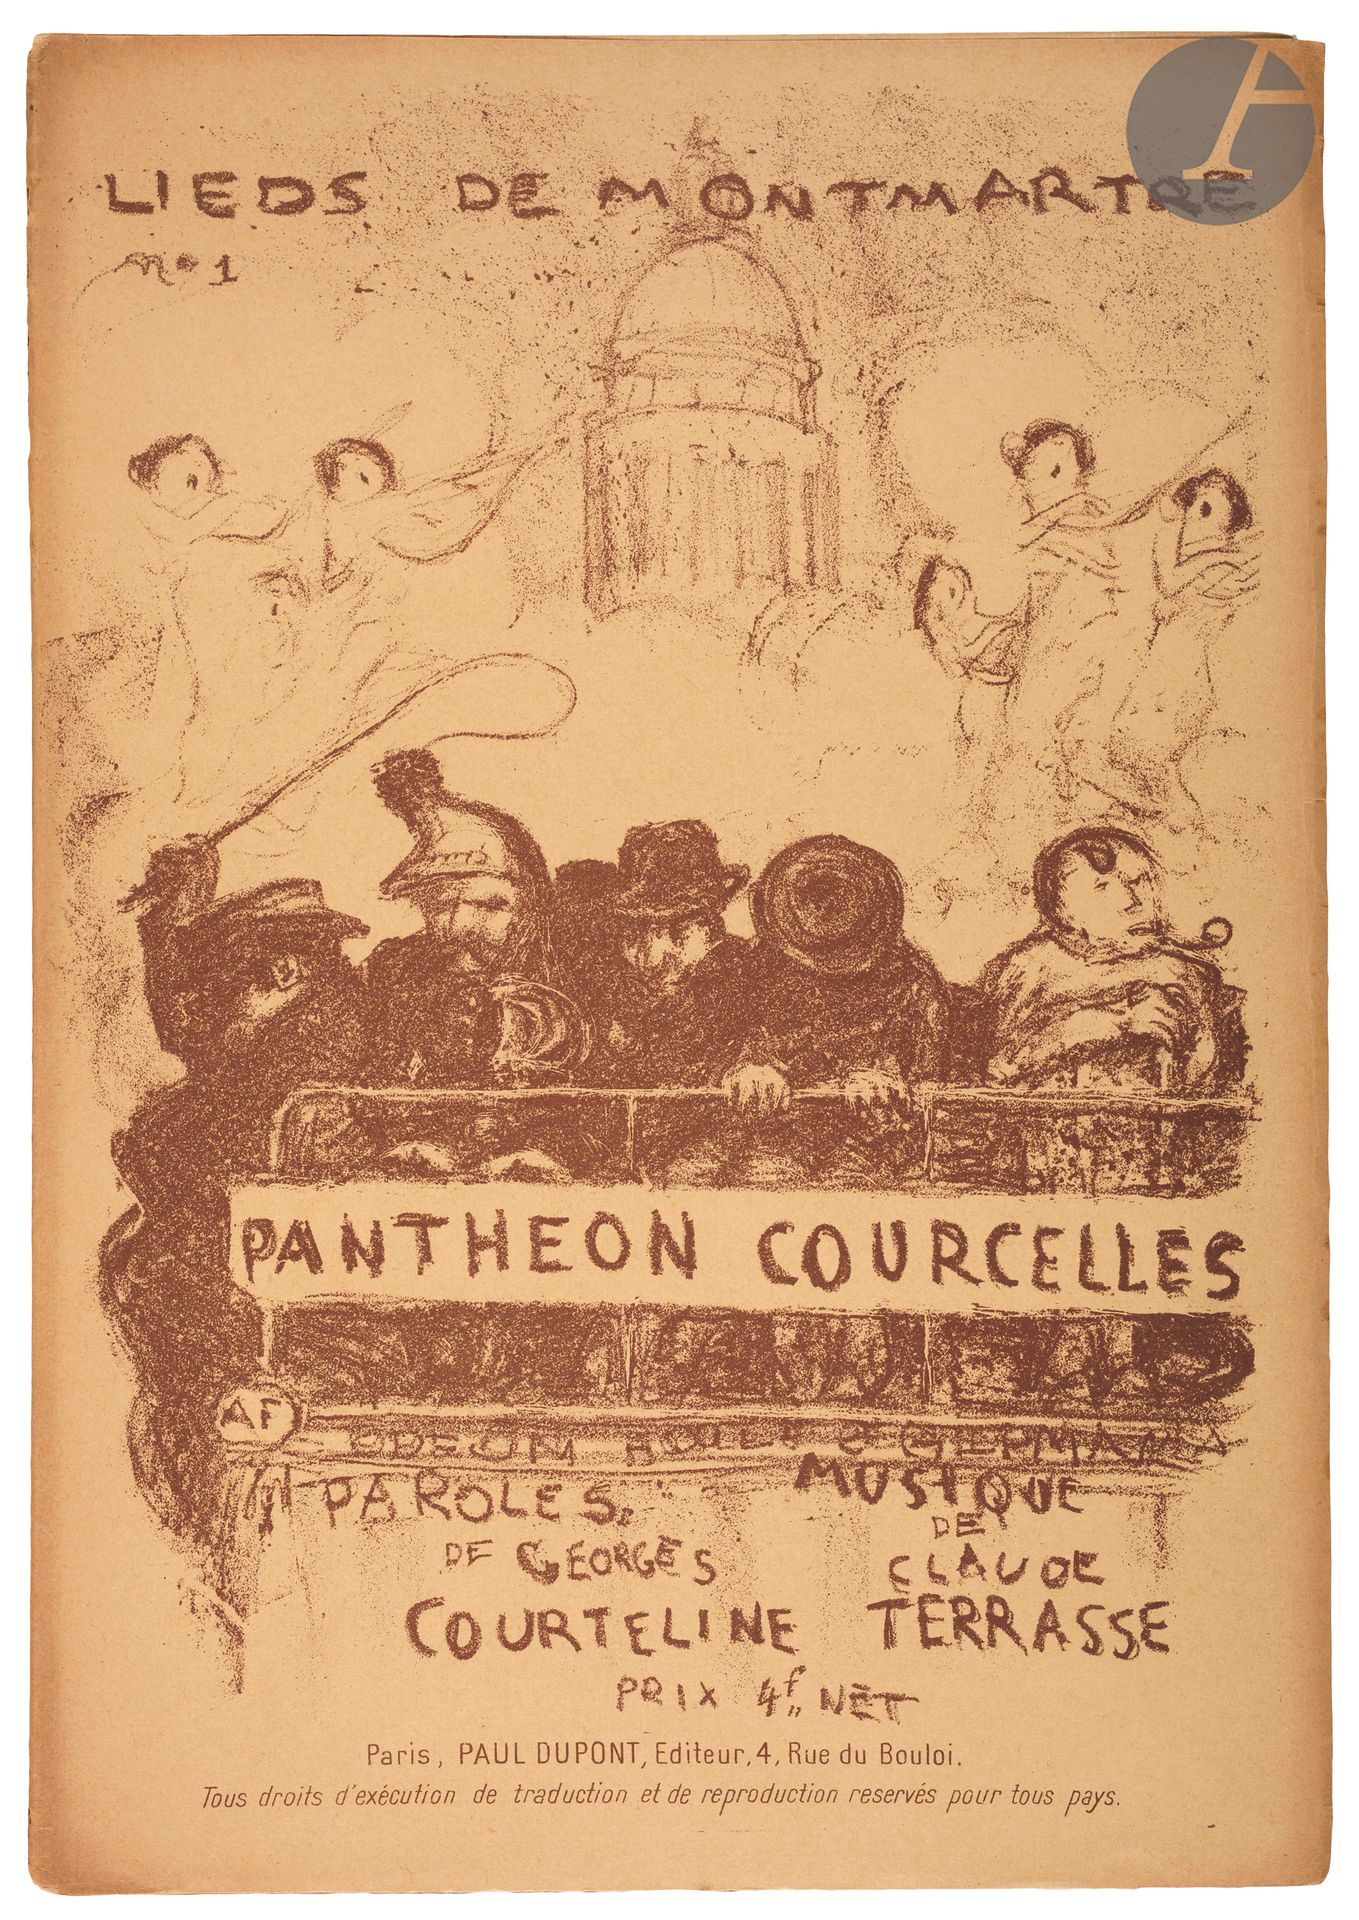 Null 
*皮埃尔-博纳尔(1867-1947) 


Panthéon-Courcelles (Lieds de Montmartre, n° 1).巴黎，&hellip;